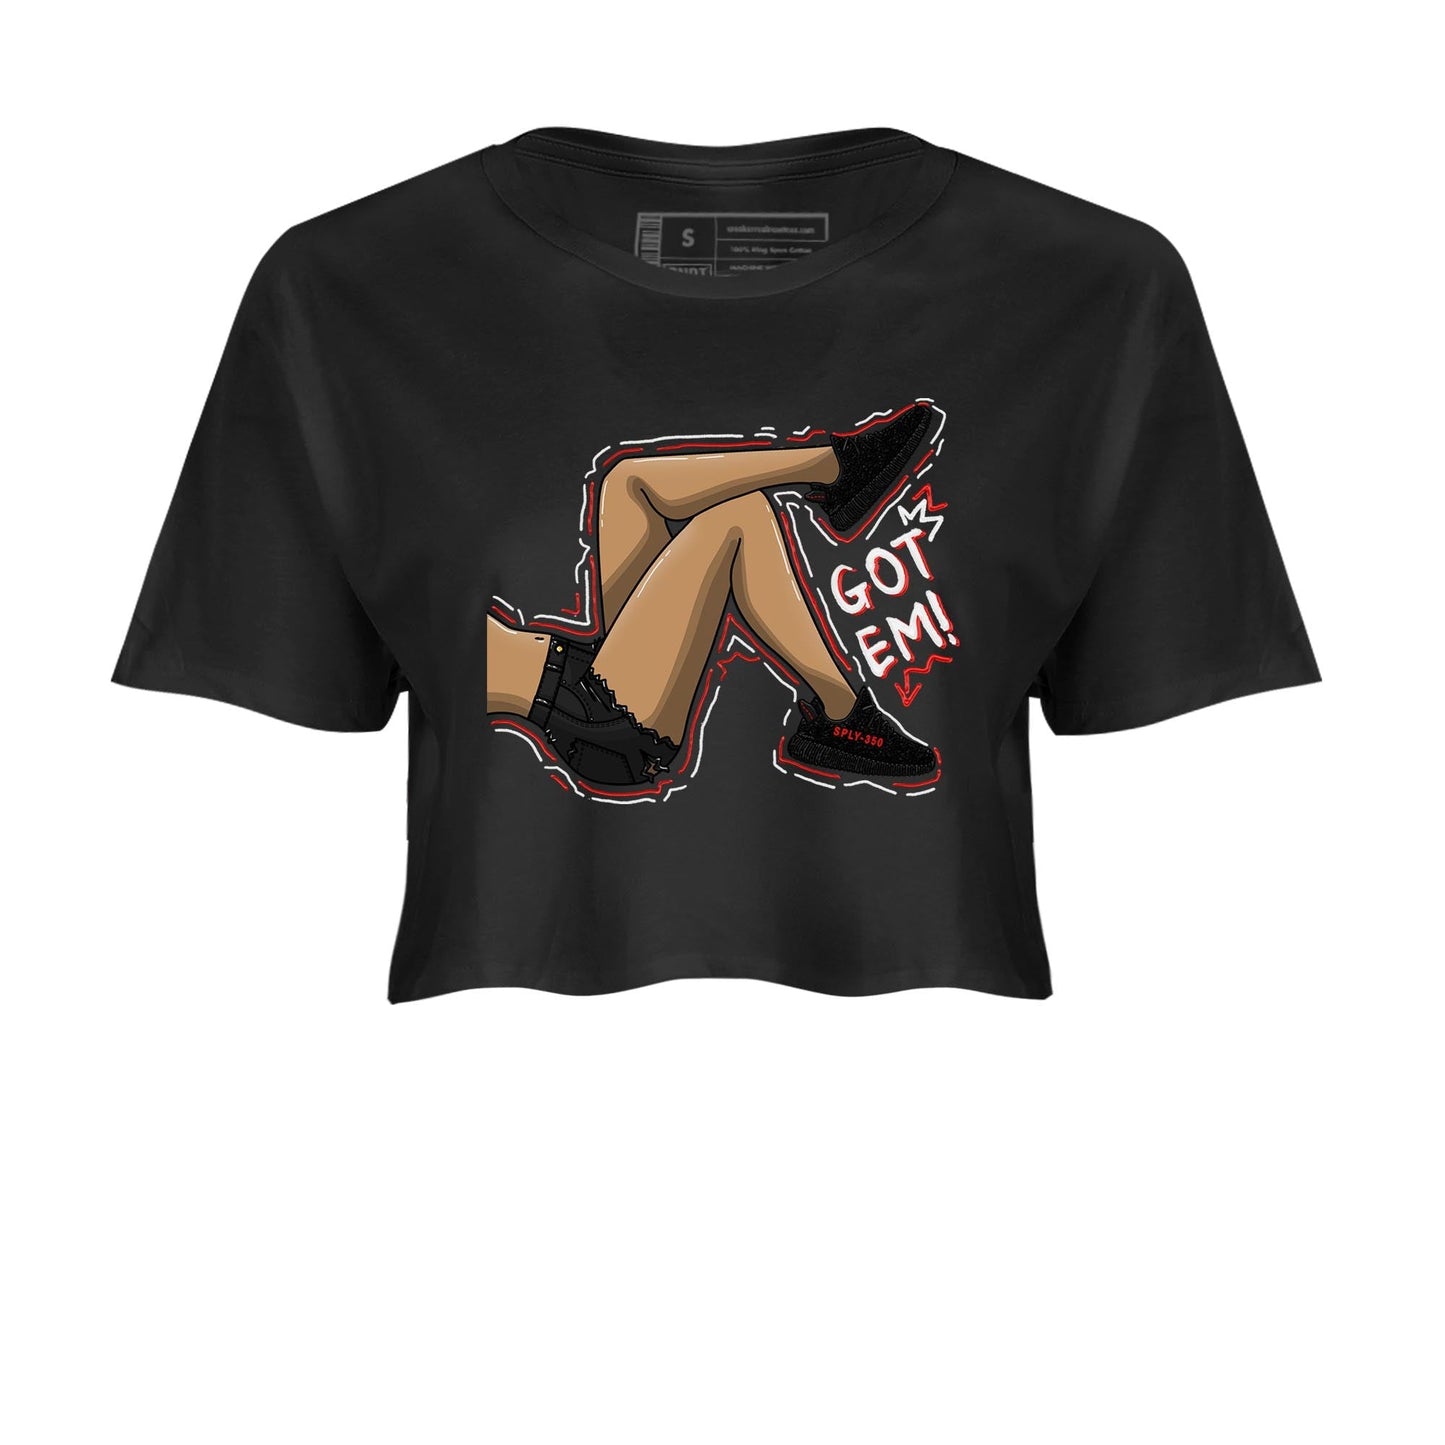 Yeezy 350 Bred shirt to match jordans Got Em Legs Streetwear Sneaker Shirt Yeezy Boost 350 V2 Bred Drip Gear Zone Sneaker Matching Clothing Black 2 Crop T-Shirt